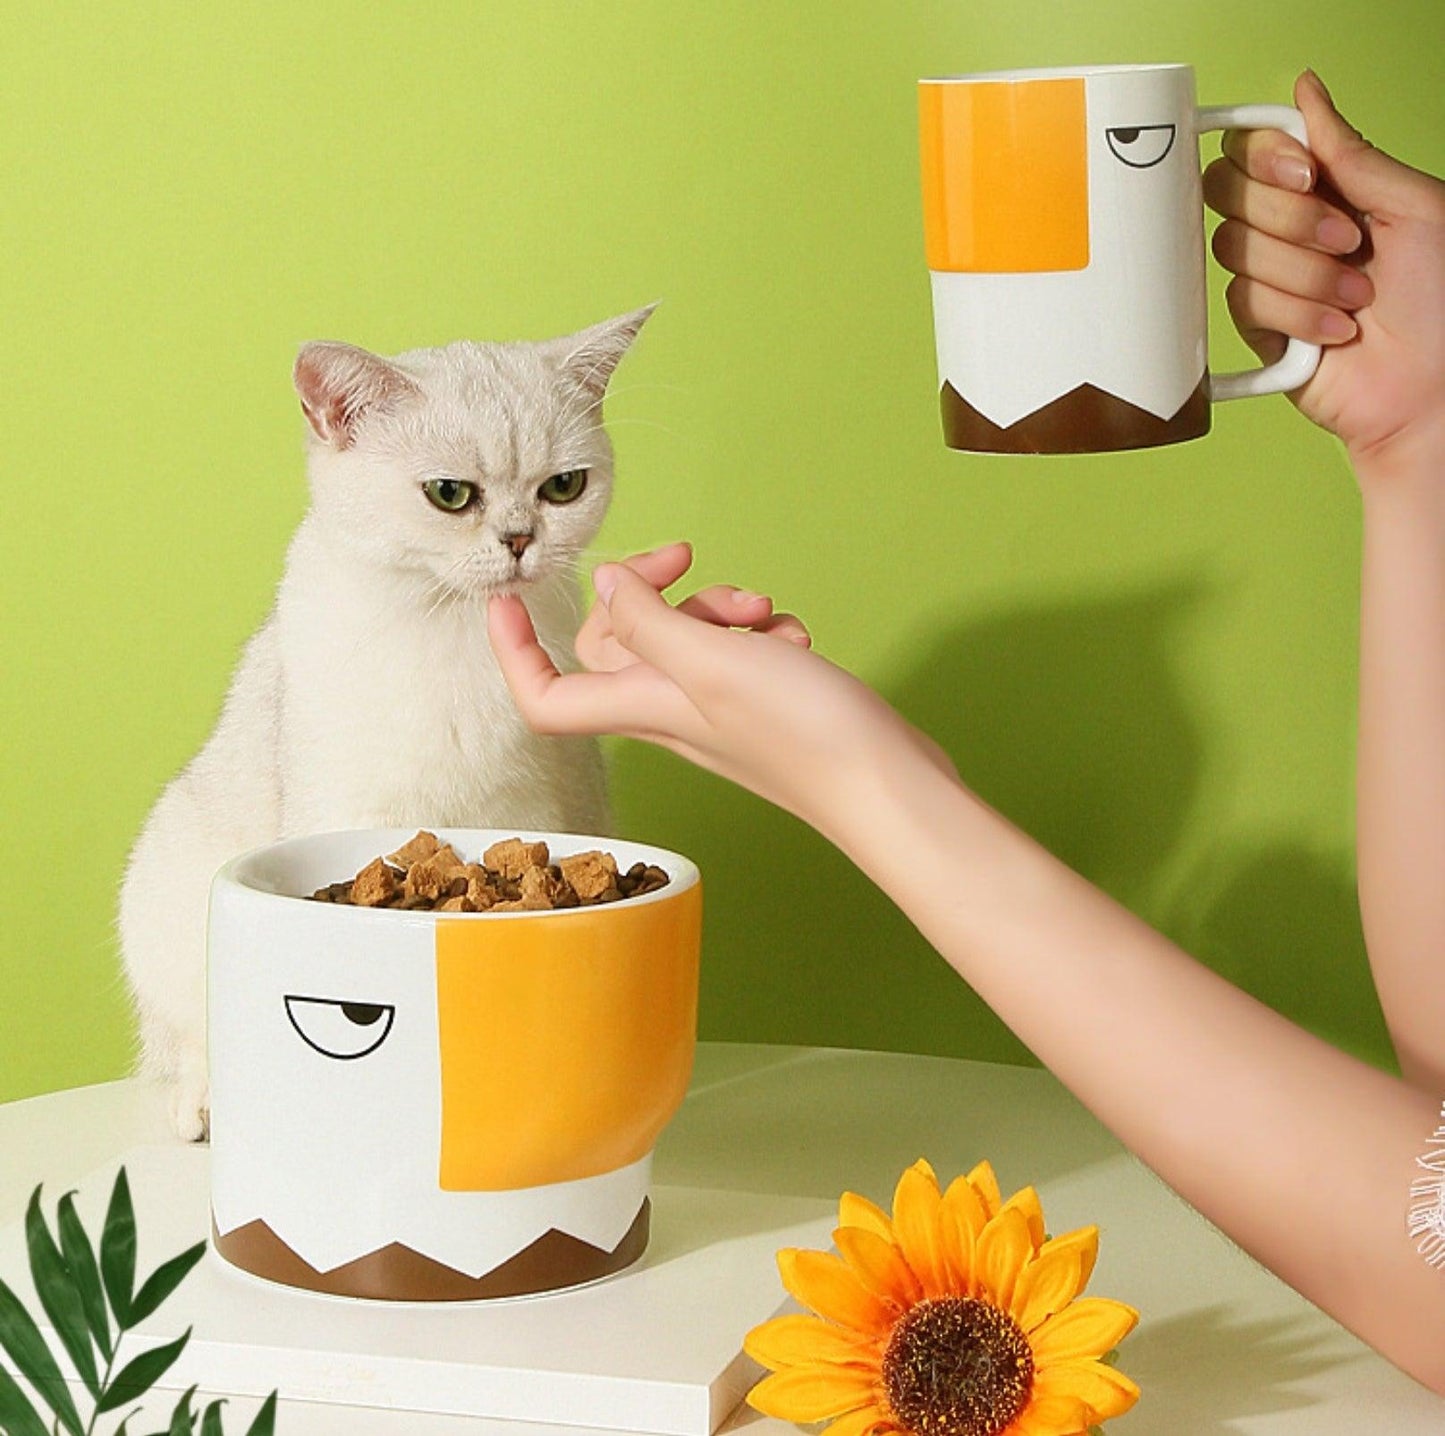 Gribouille pet bowl matching mug